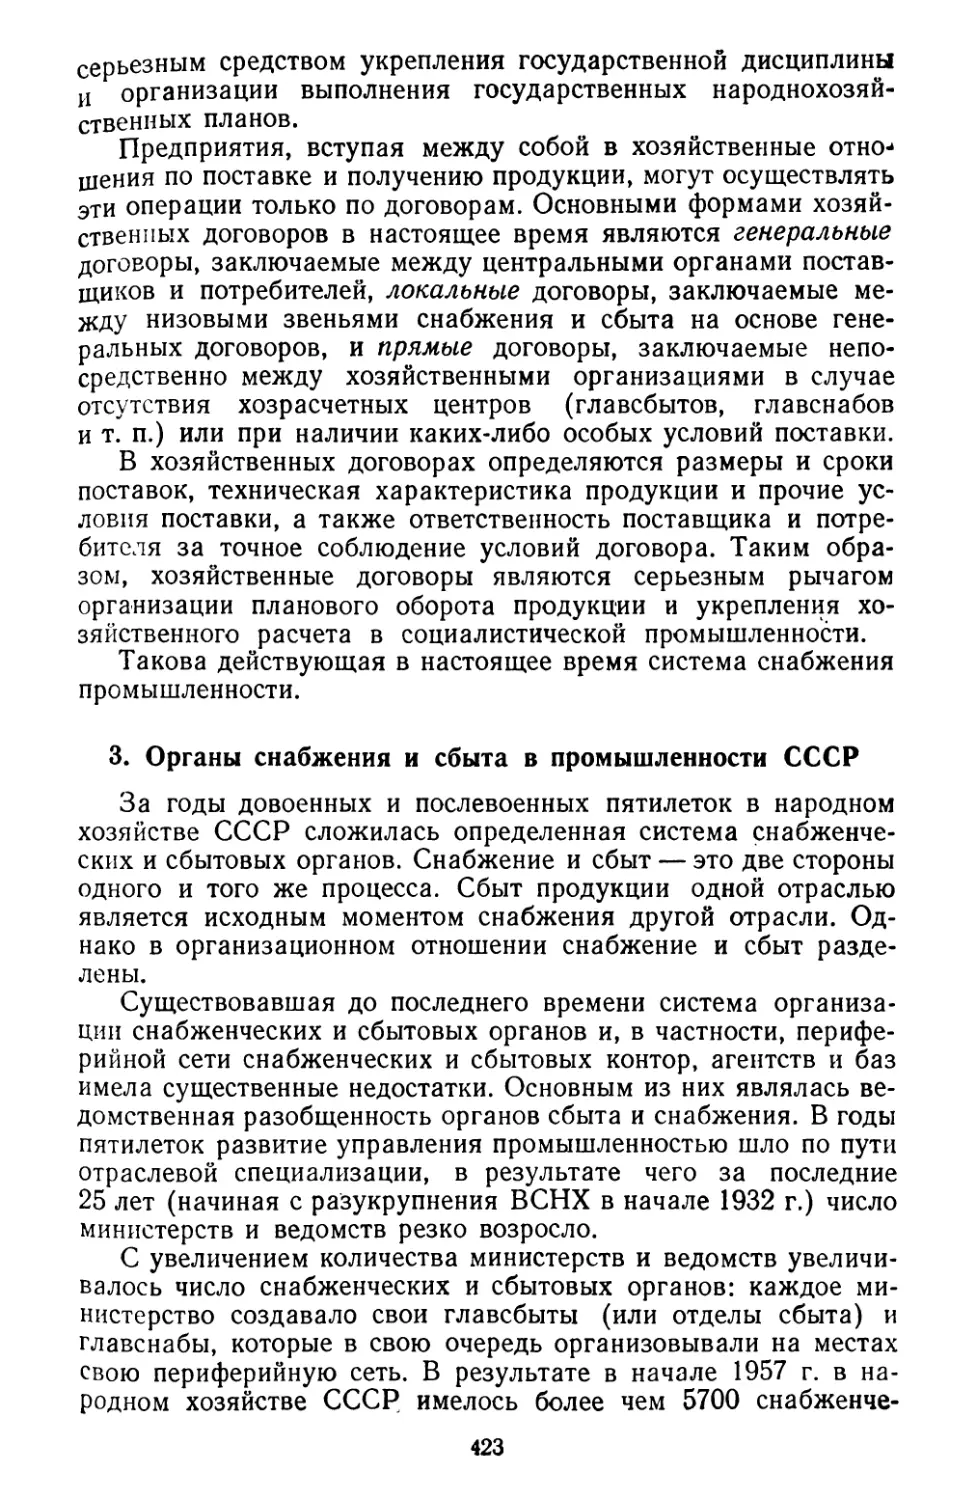 3. Органы снабжения и сбыта в промышленности СССР